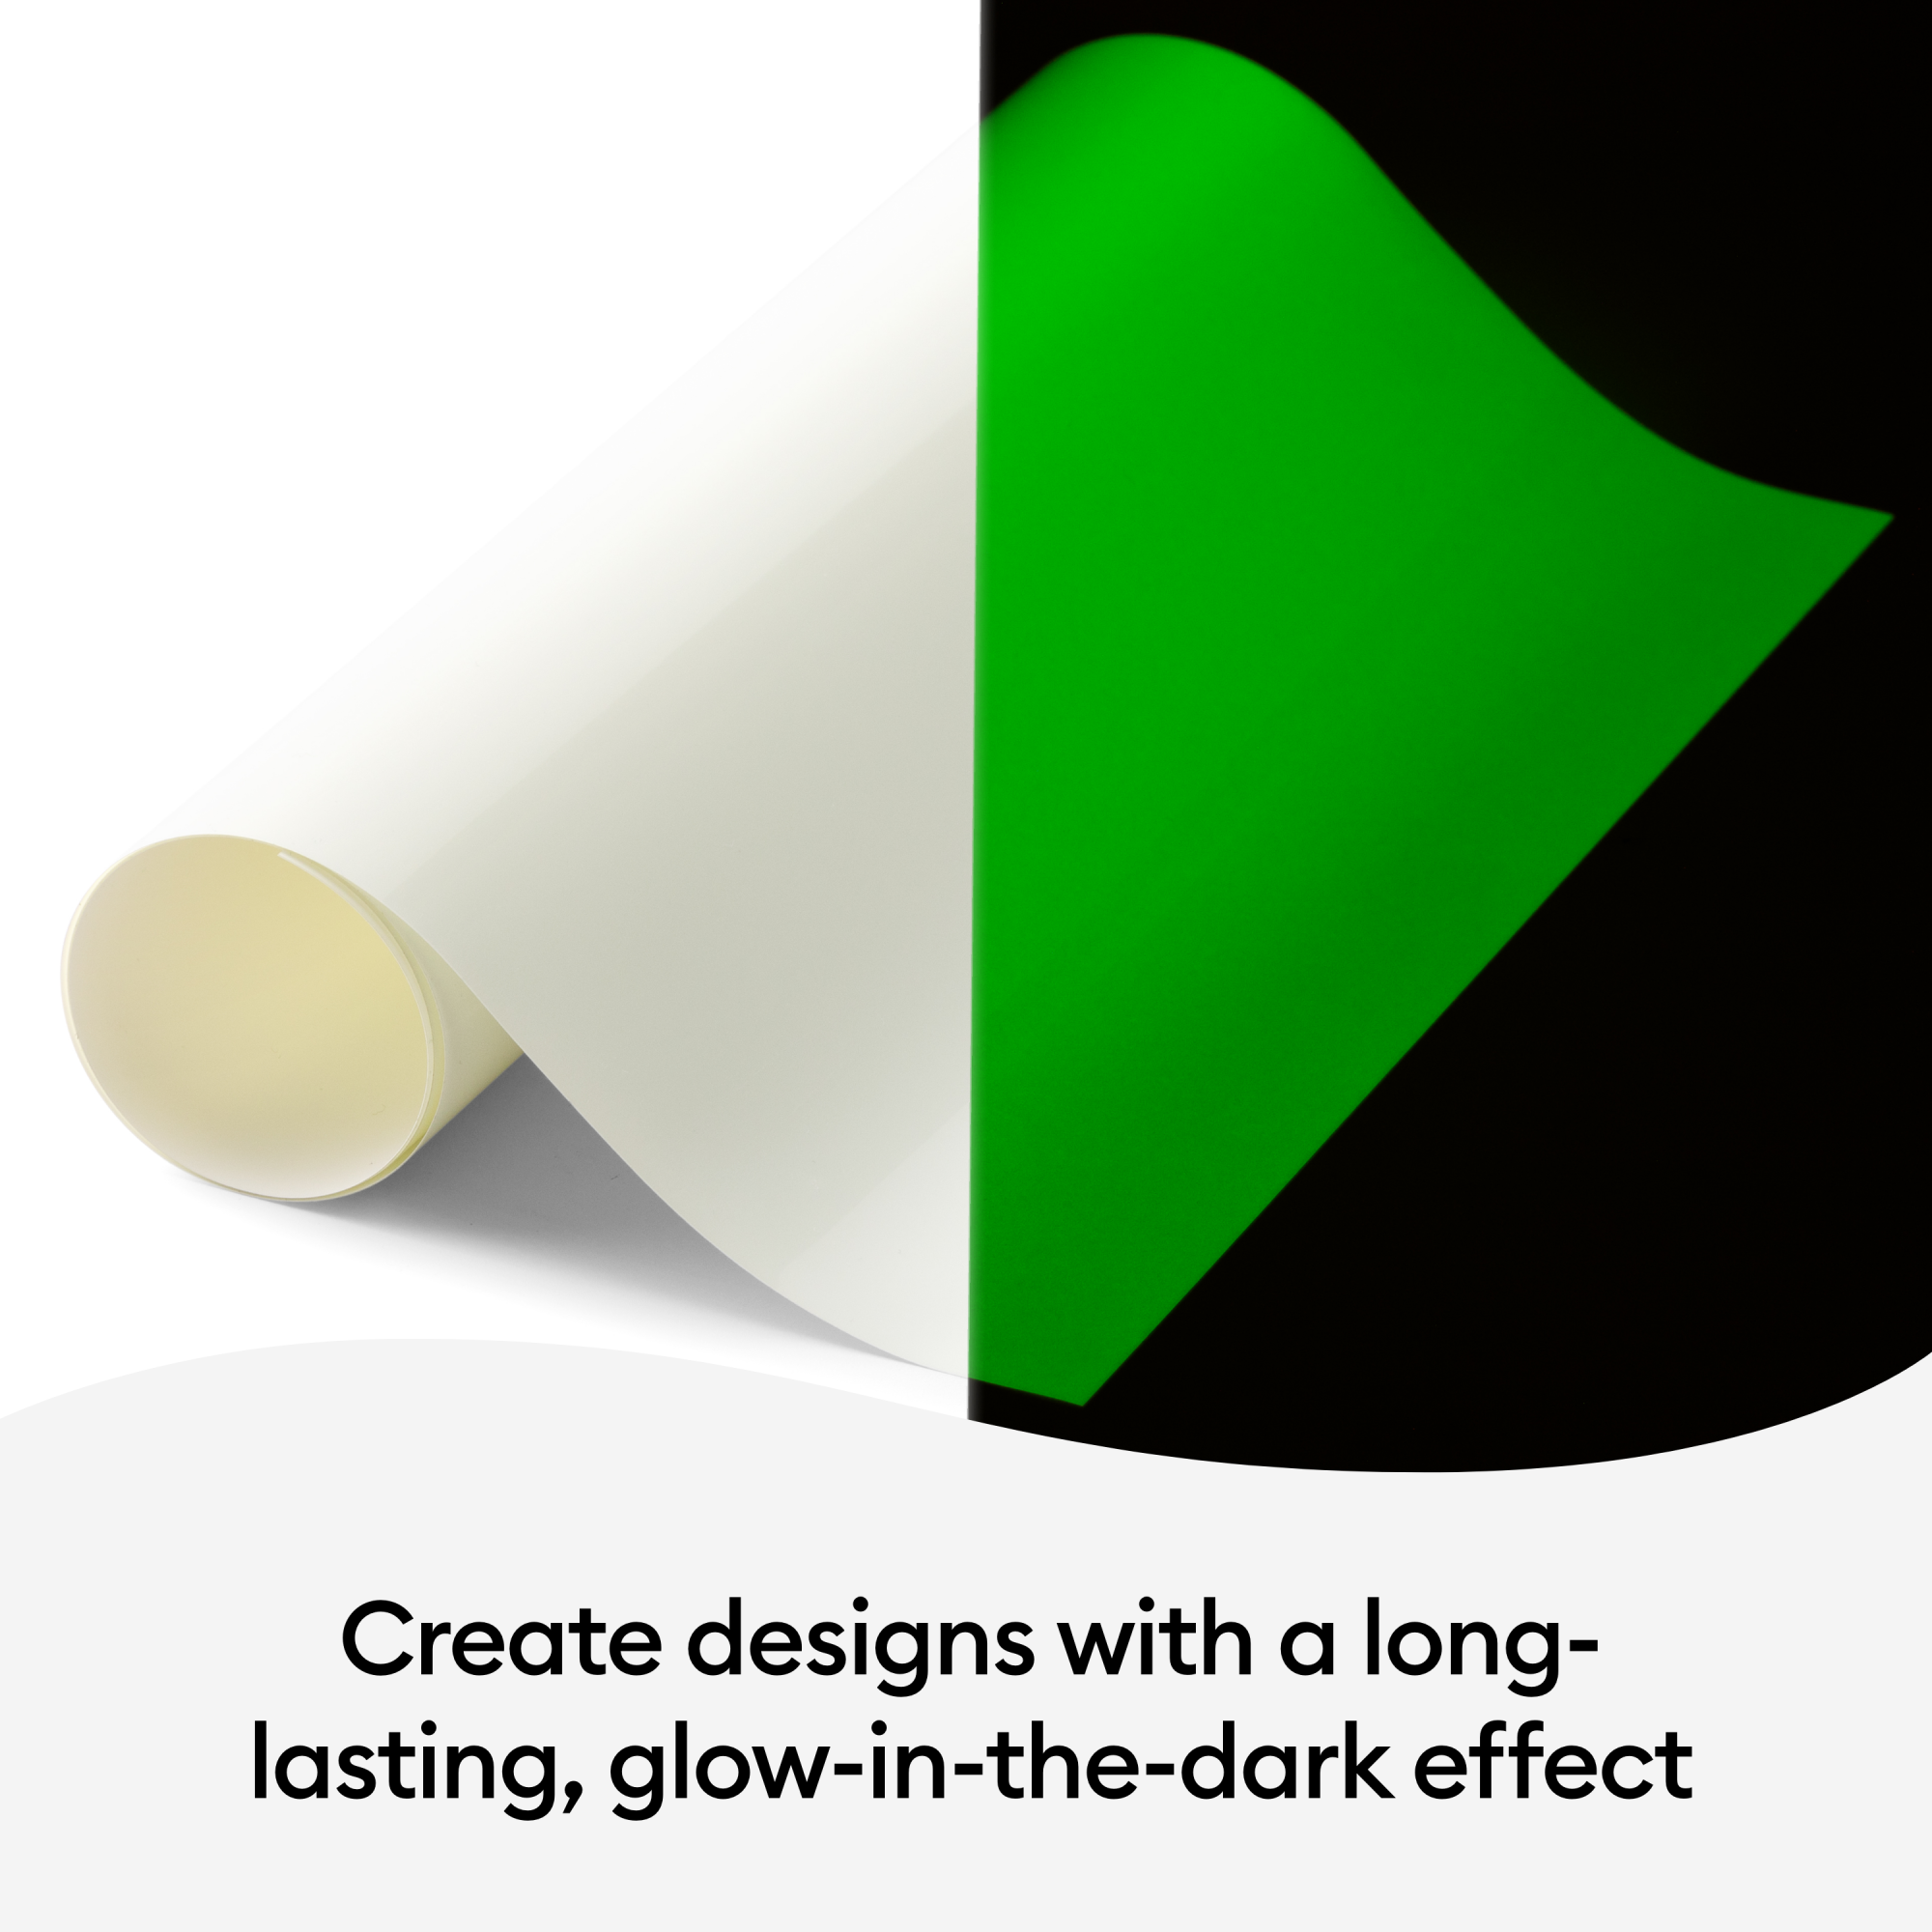 Cricut Glow-In-The Dark Iron-On